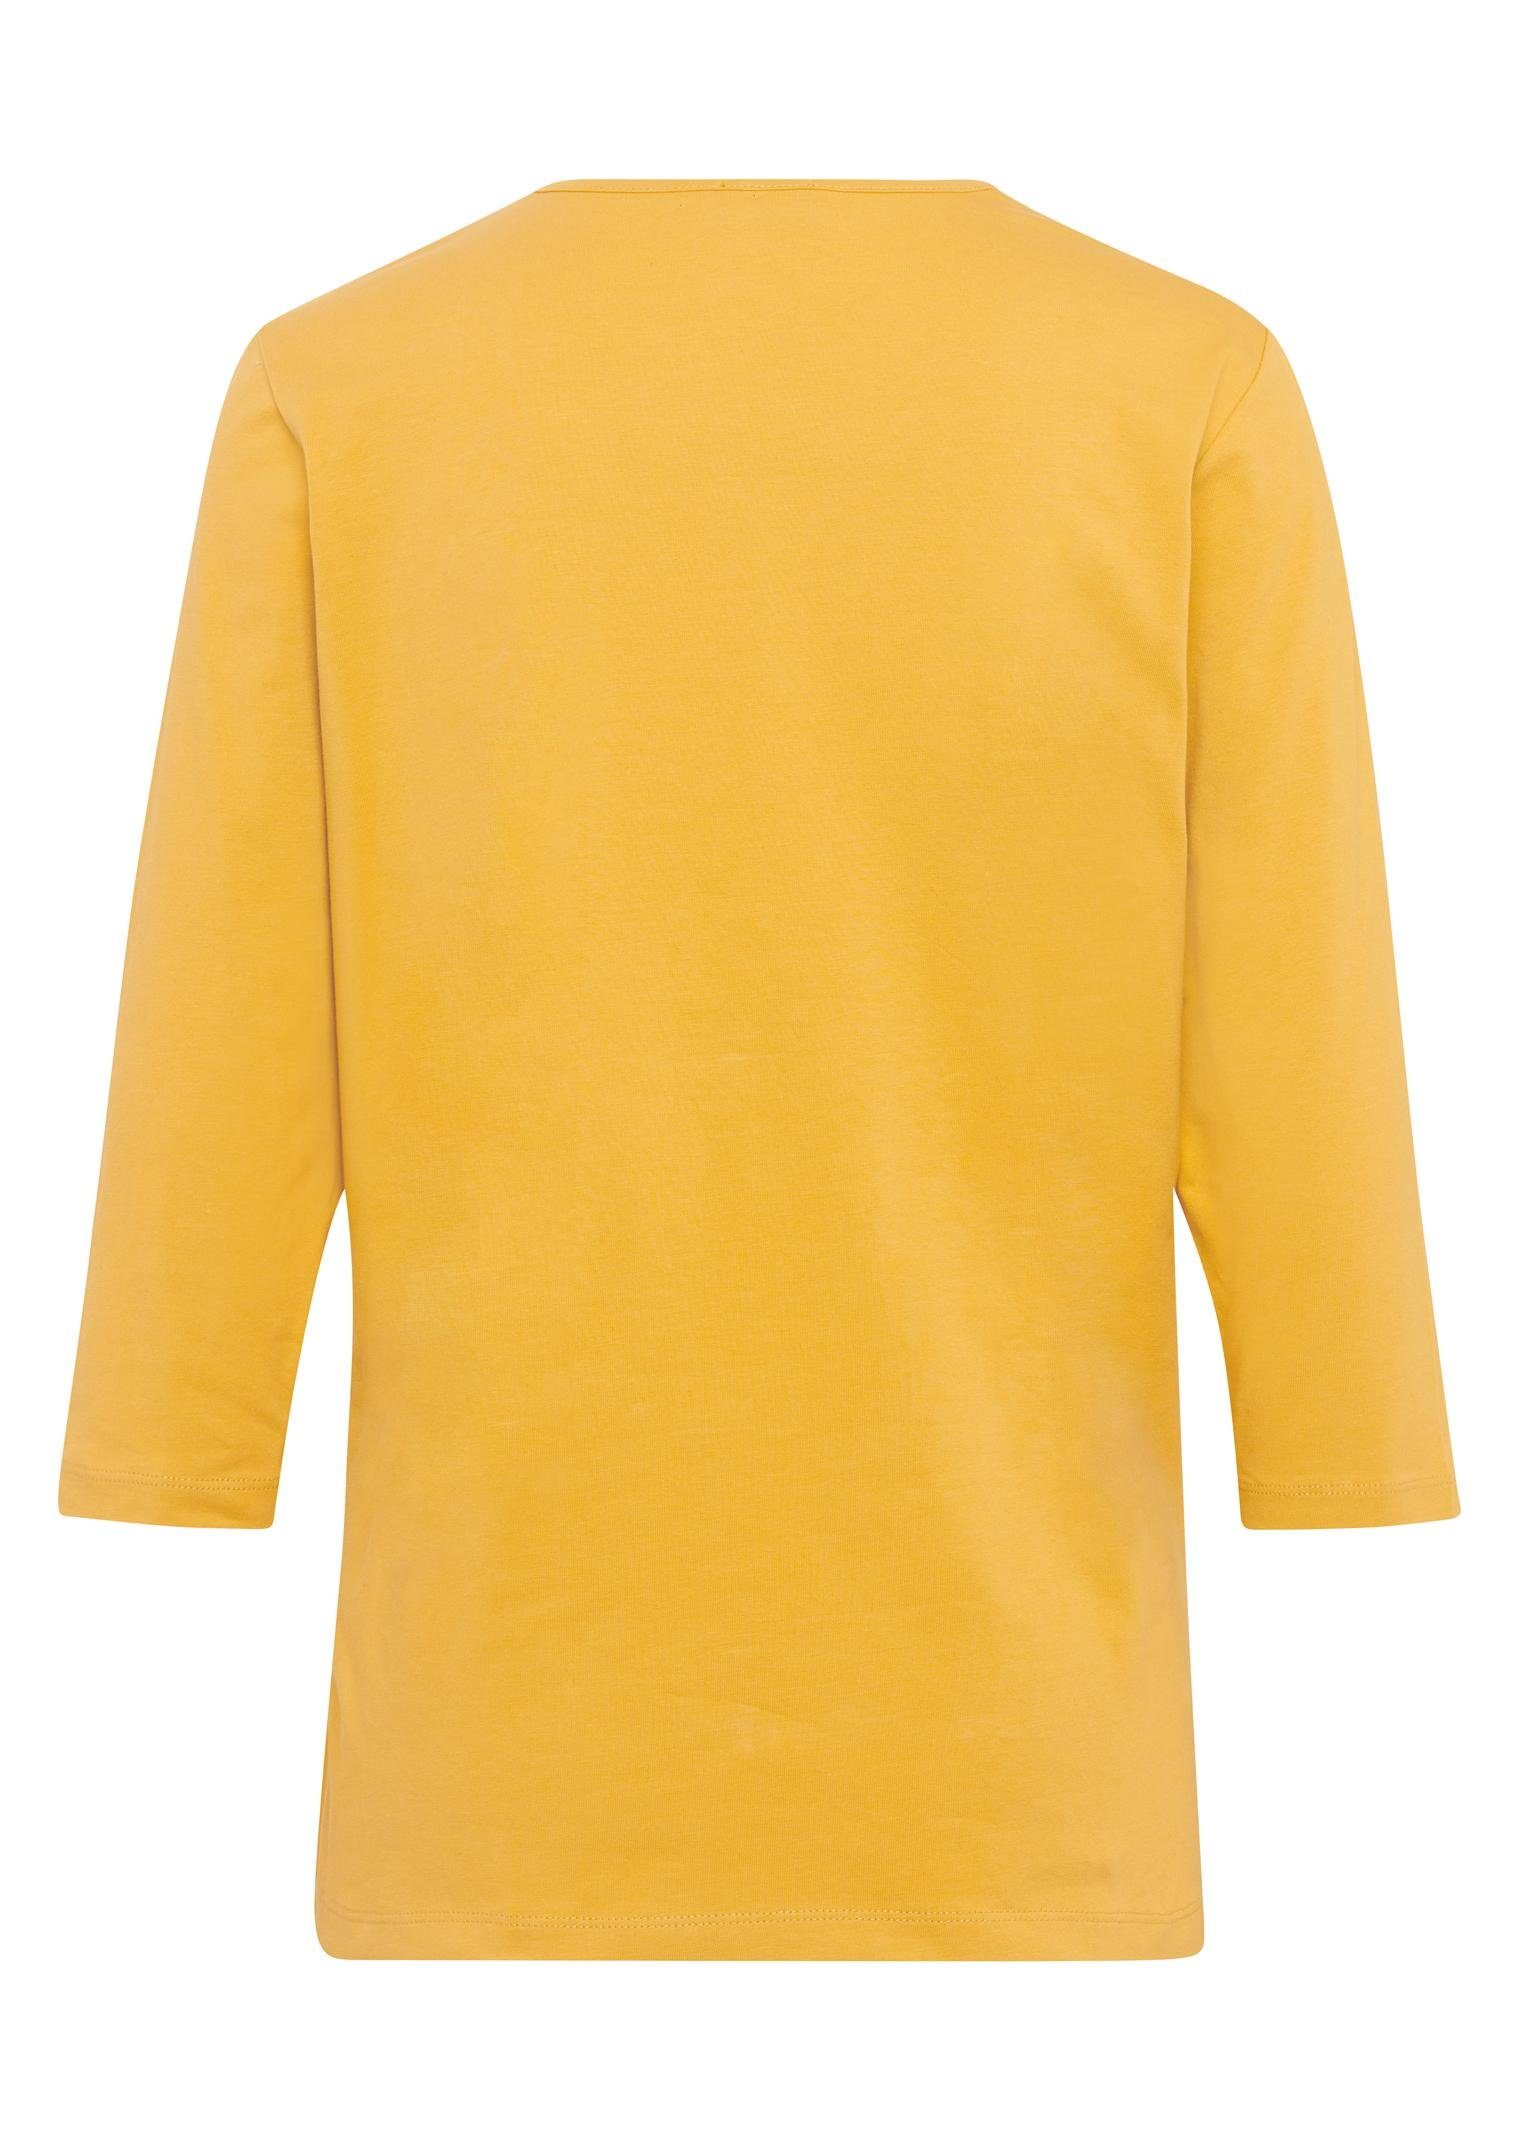 GOLDNER 3/4-Arm-Shirt T-Shirt mit safran charmantem Ausschnitt und Schmucksteinchen